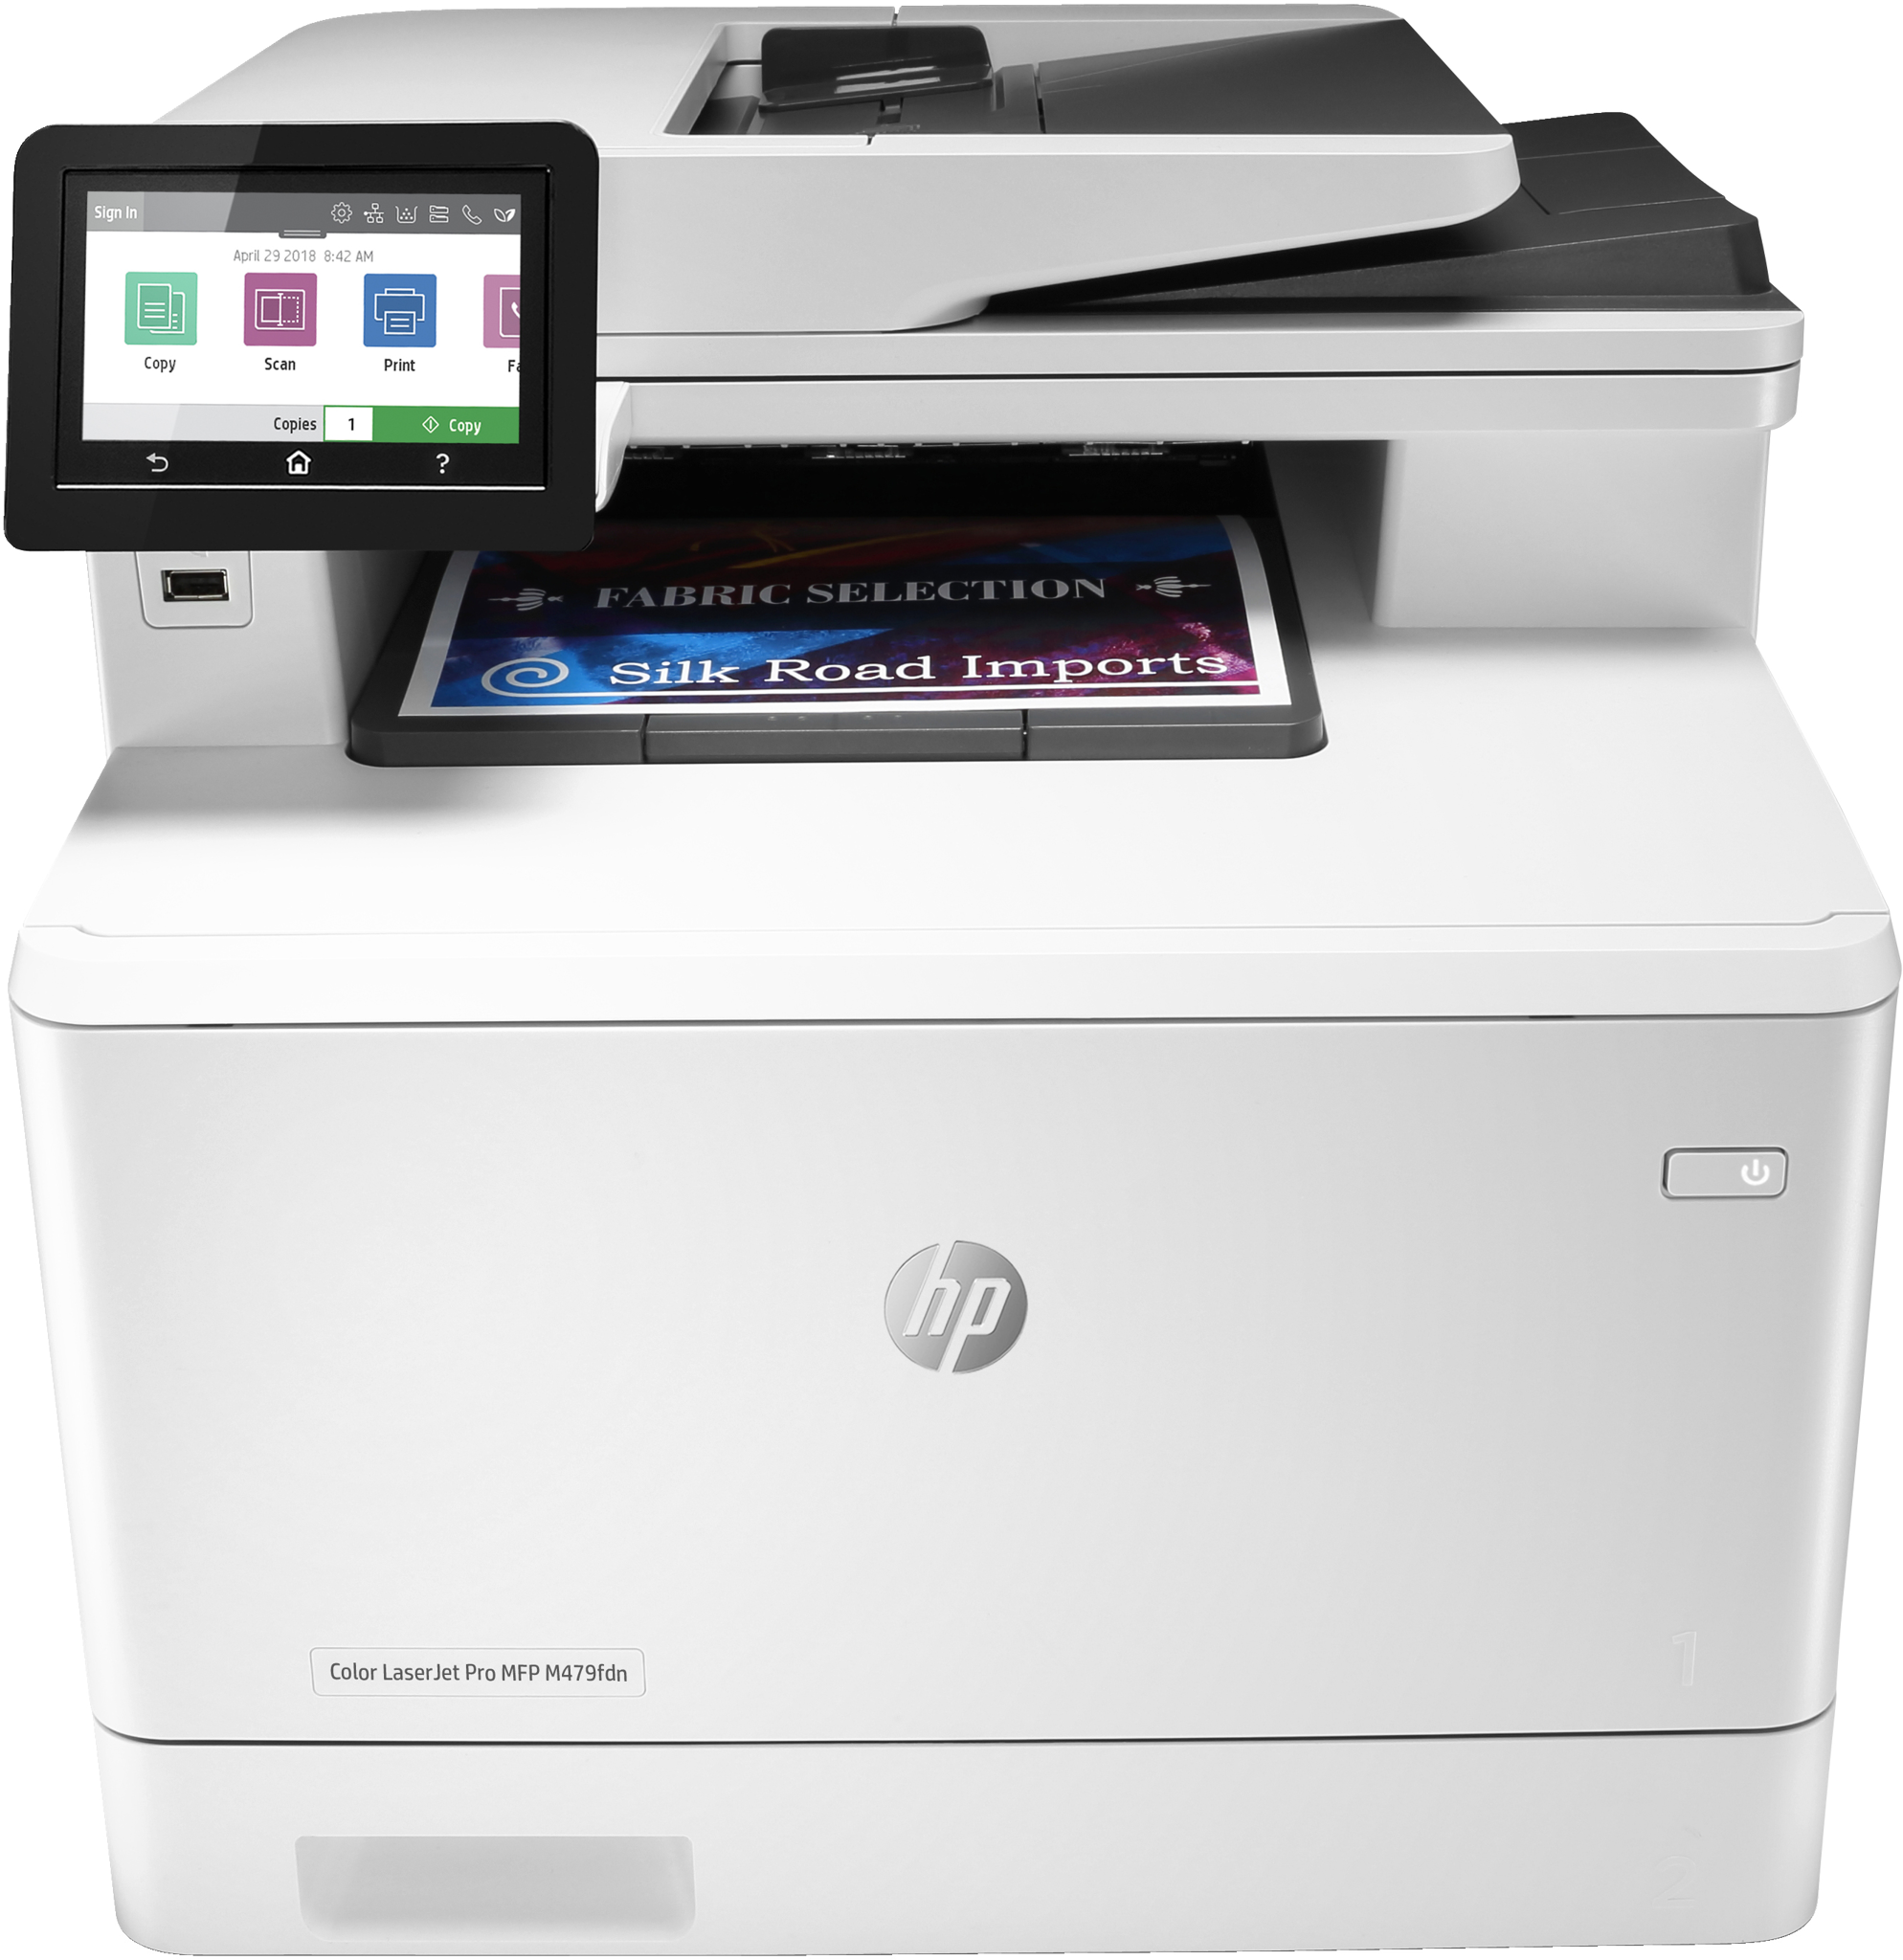 Bild von HP Color LaserJet Pro MFP M479fdn - Drucken - Kopieren - Scannen - Faxen - Mailen - Scannen an E-Mail/PDF; Beidseitiger Druck; Automatische - geglättete Dokumentenzuführung (50 Blatt) - Laser - Farbdruck - 600 x 600 DPI - A4 - Direktdruck - Grau - Weiß